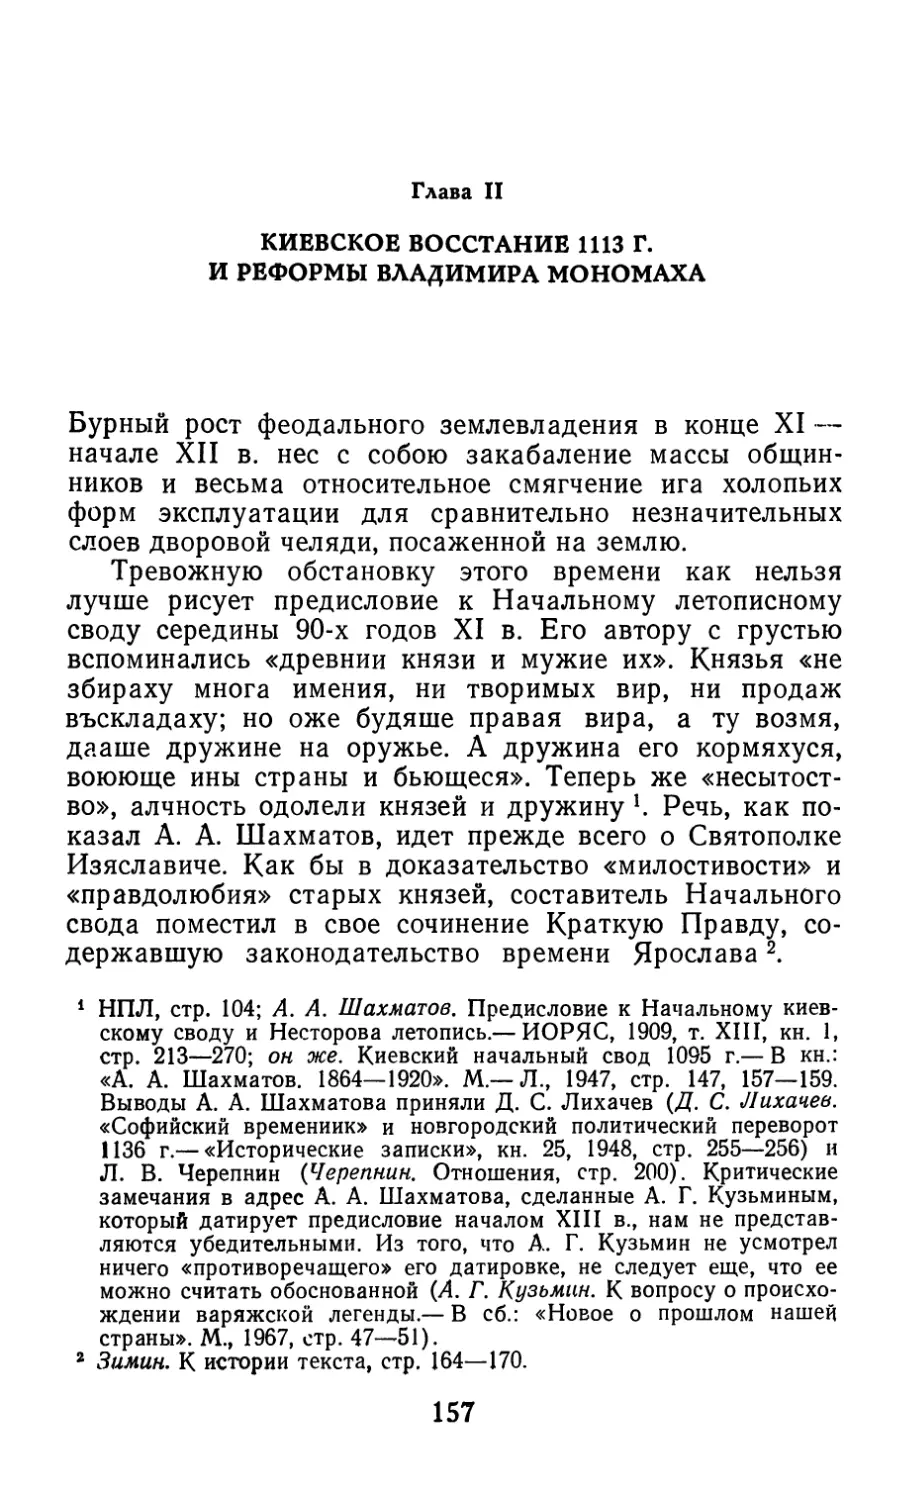 Глава II. Киевское восстание 1113 г. и реформы Владимира Мономаха